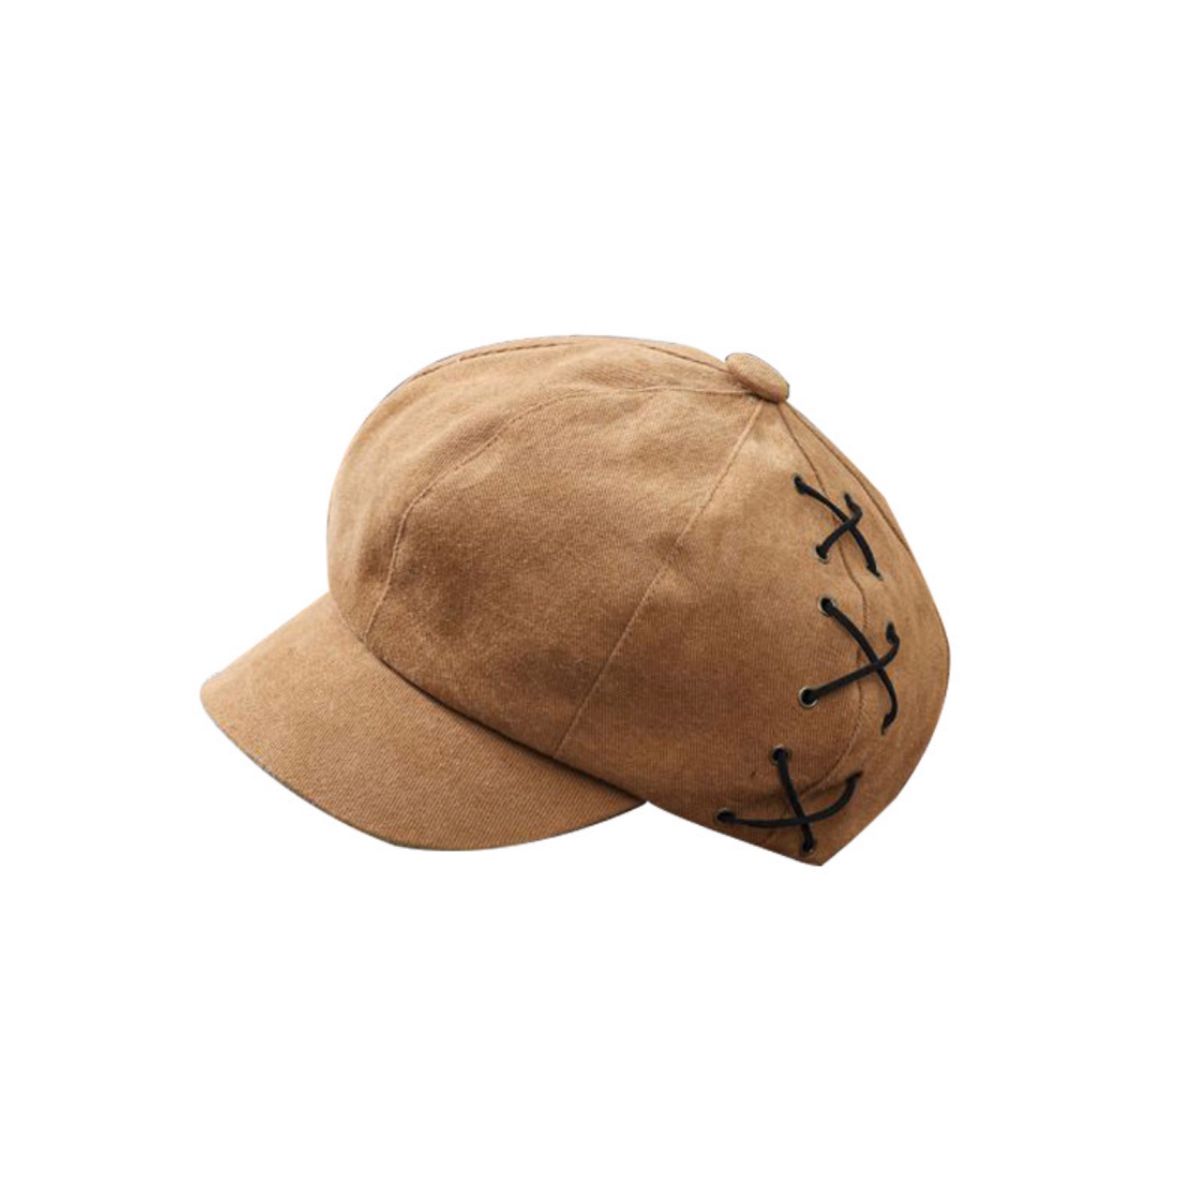 キャスケット 帽子 ブラウン キャメル 小顔効果 キャップ 帽子